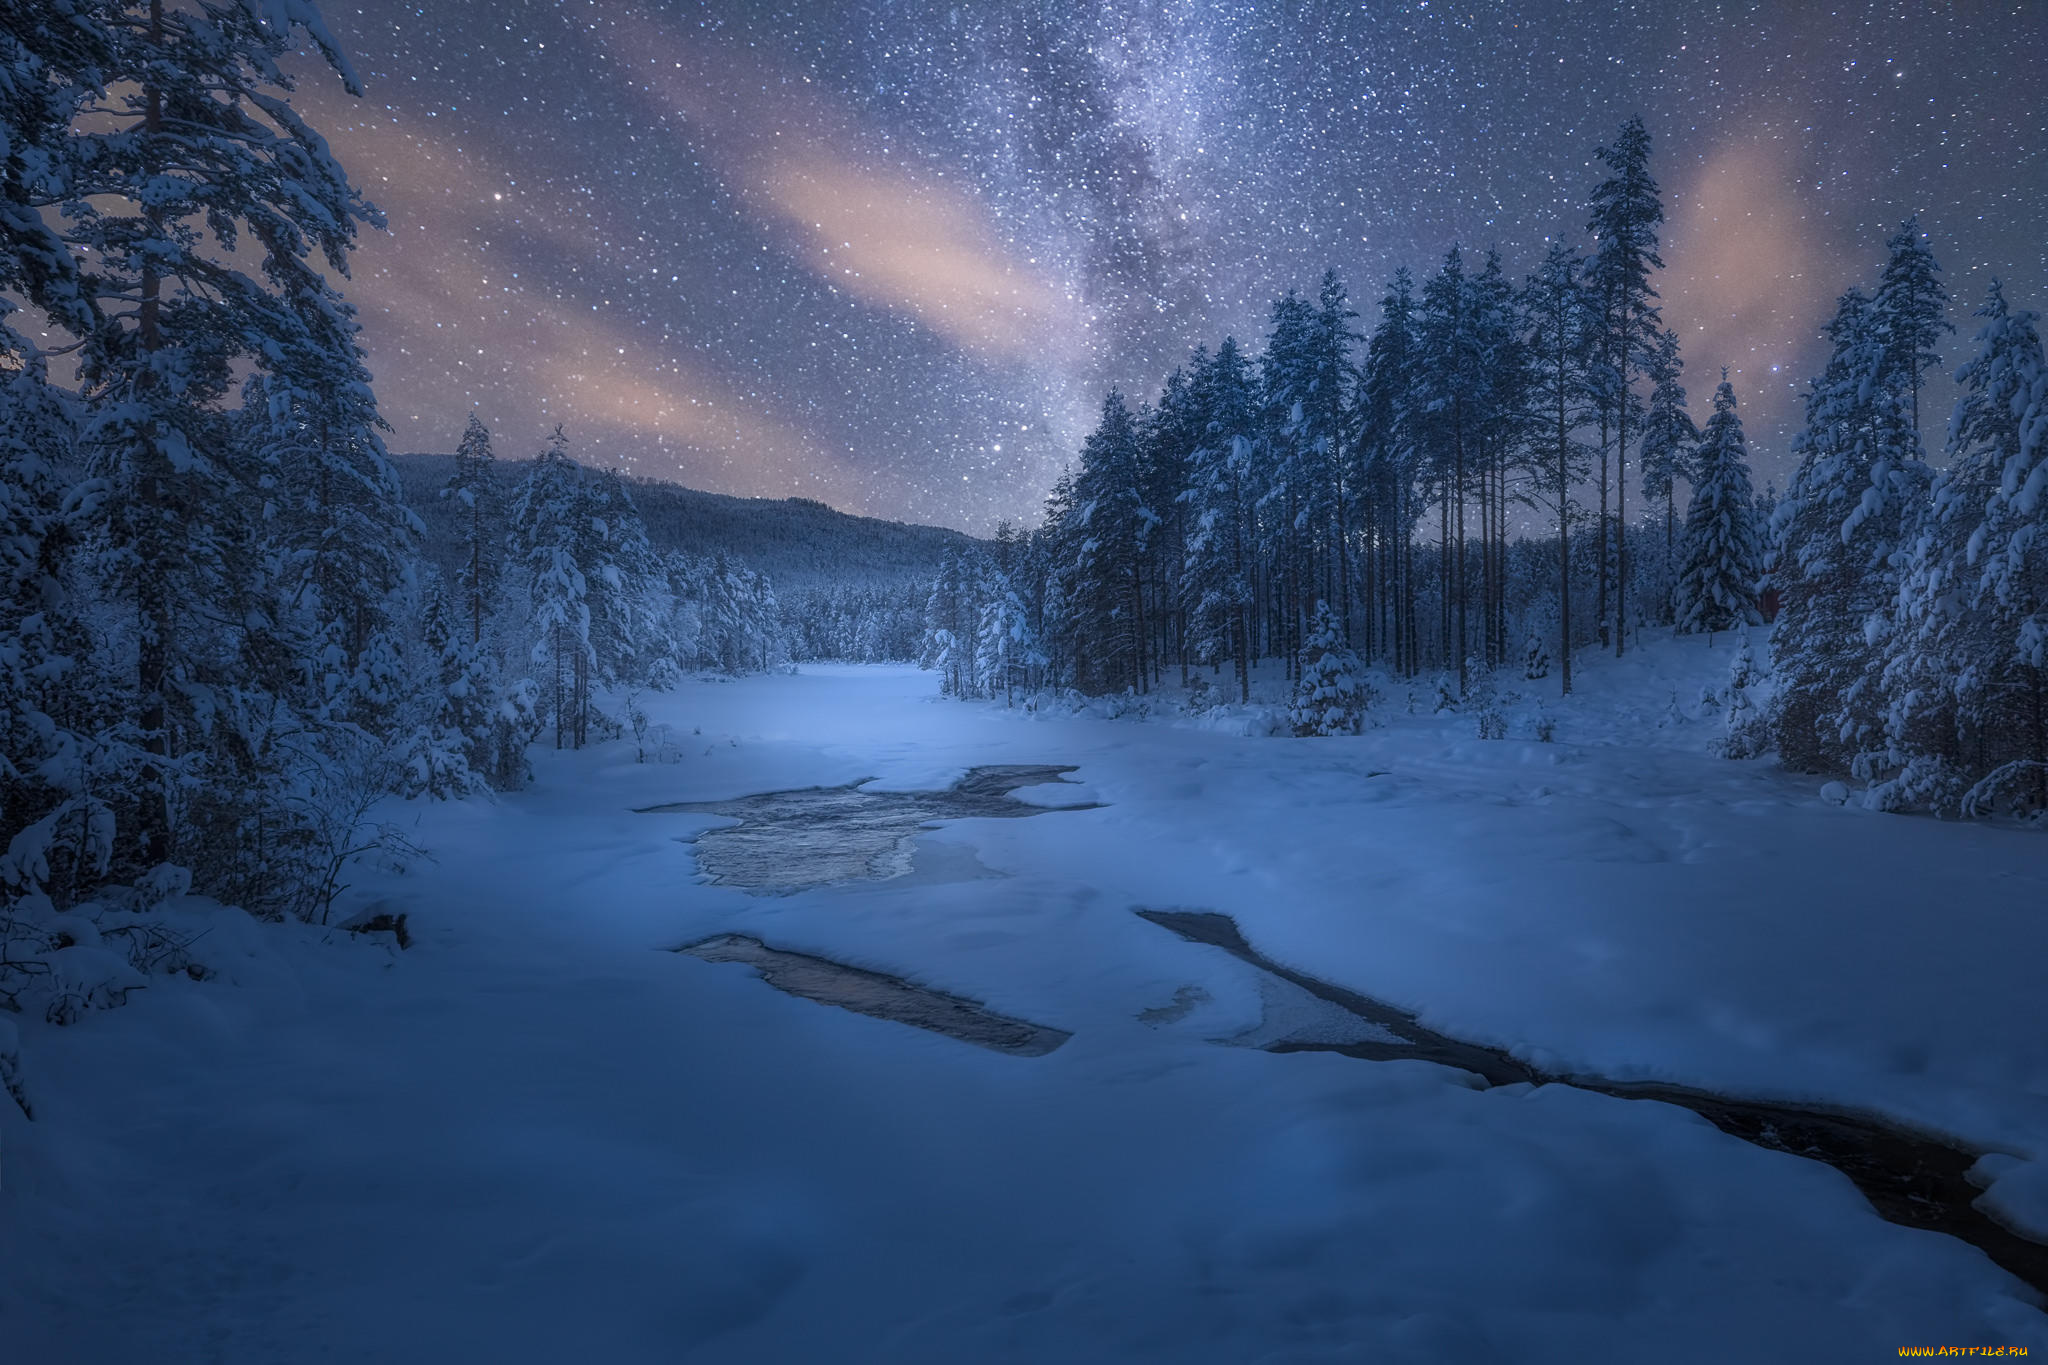 Night's. Зимняя ночь. Зимний лес ночью. Зимний ночной пейзаж. Снежный лес ночью.